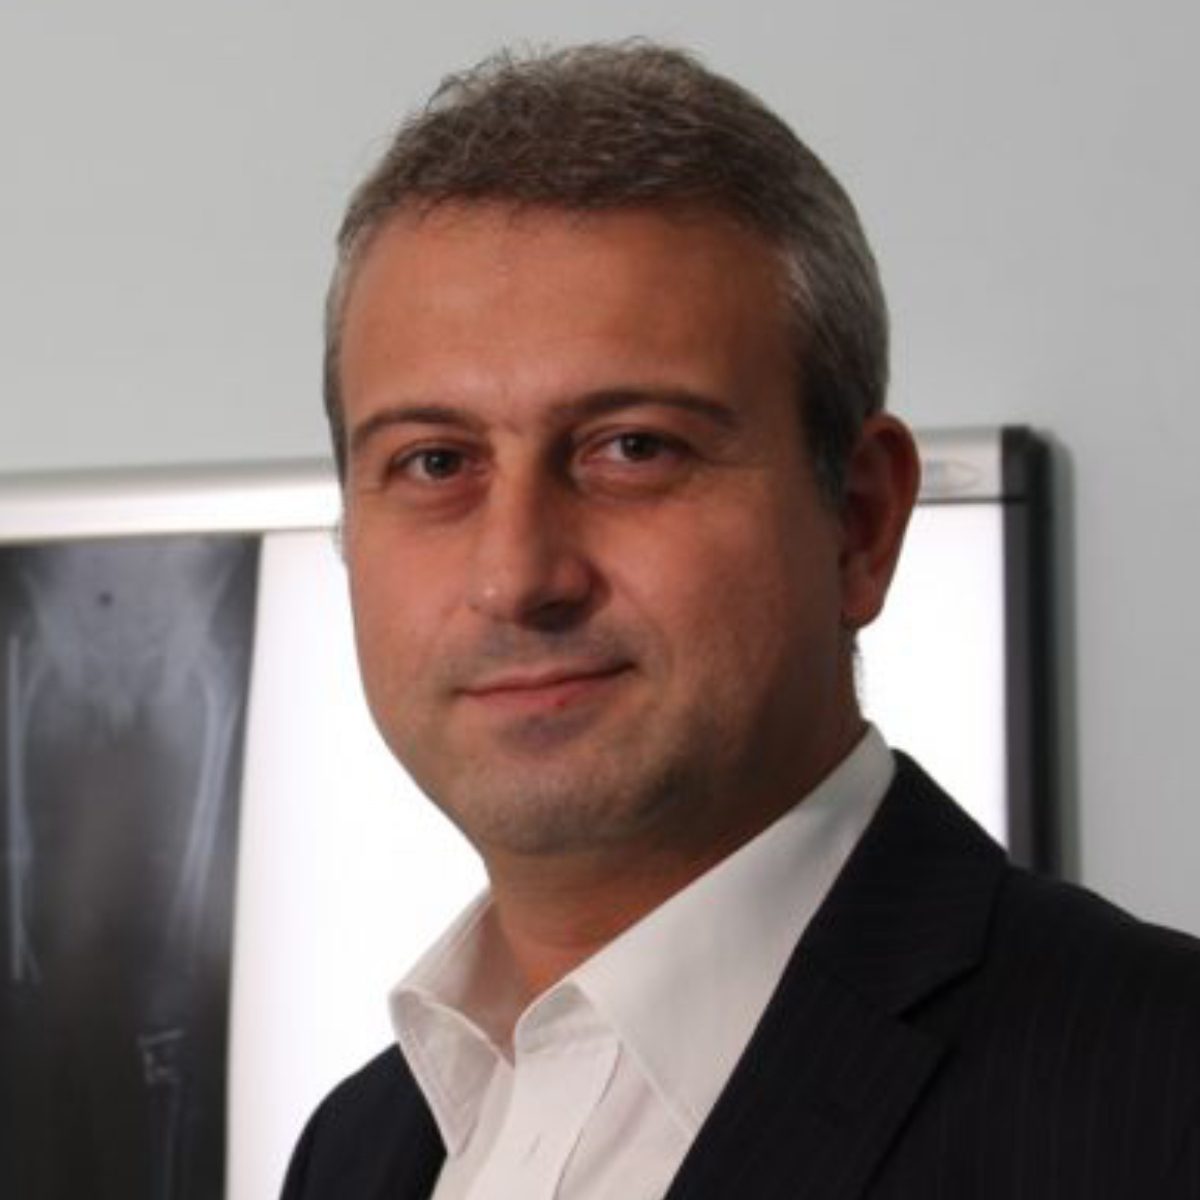 Prof. Dr. Tahsin Beyzadeoğlu